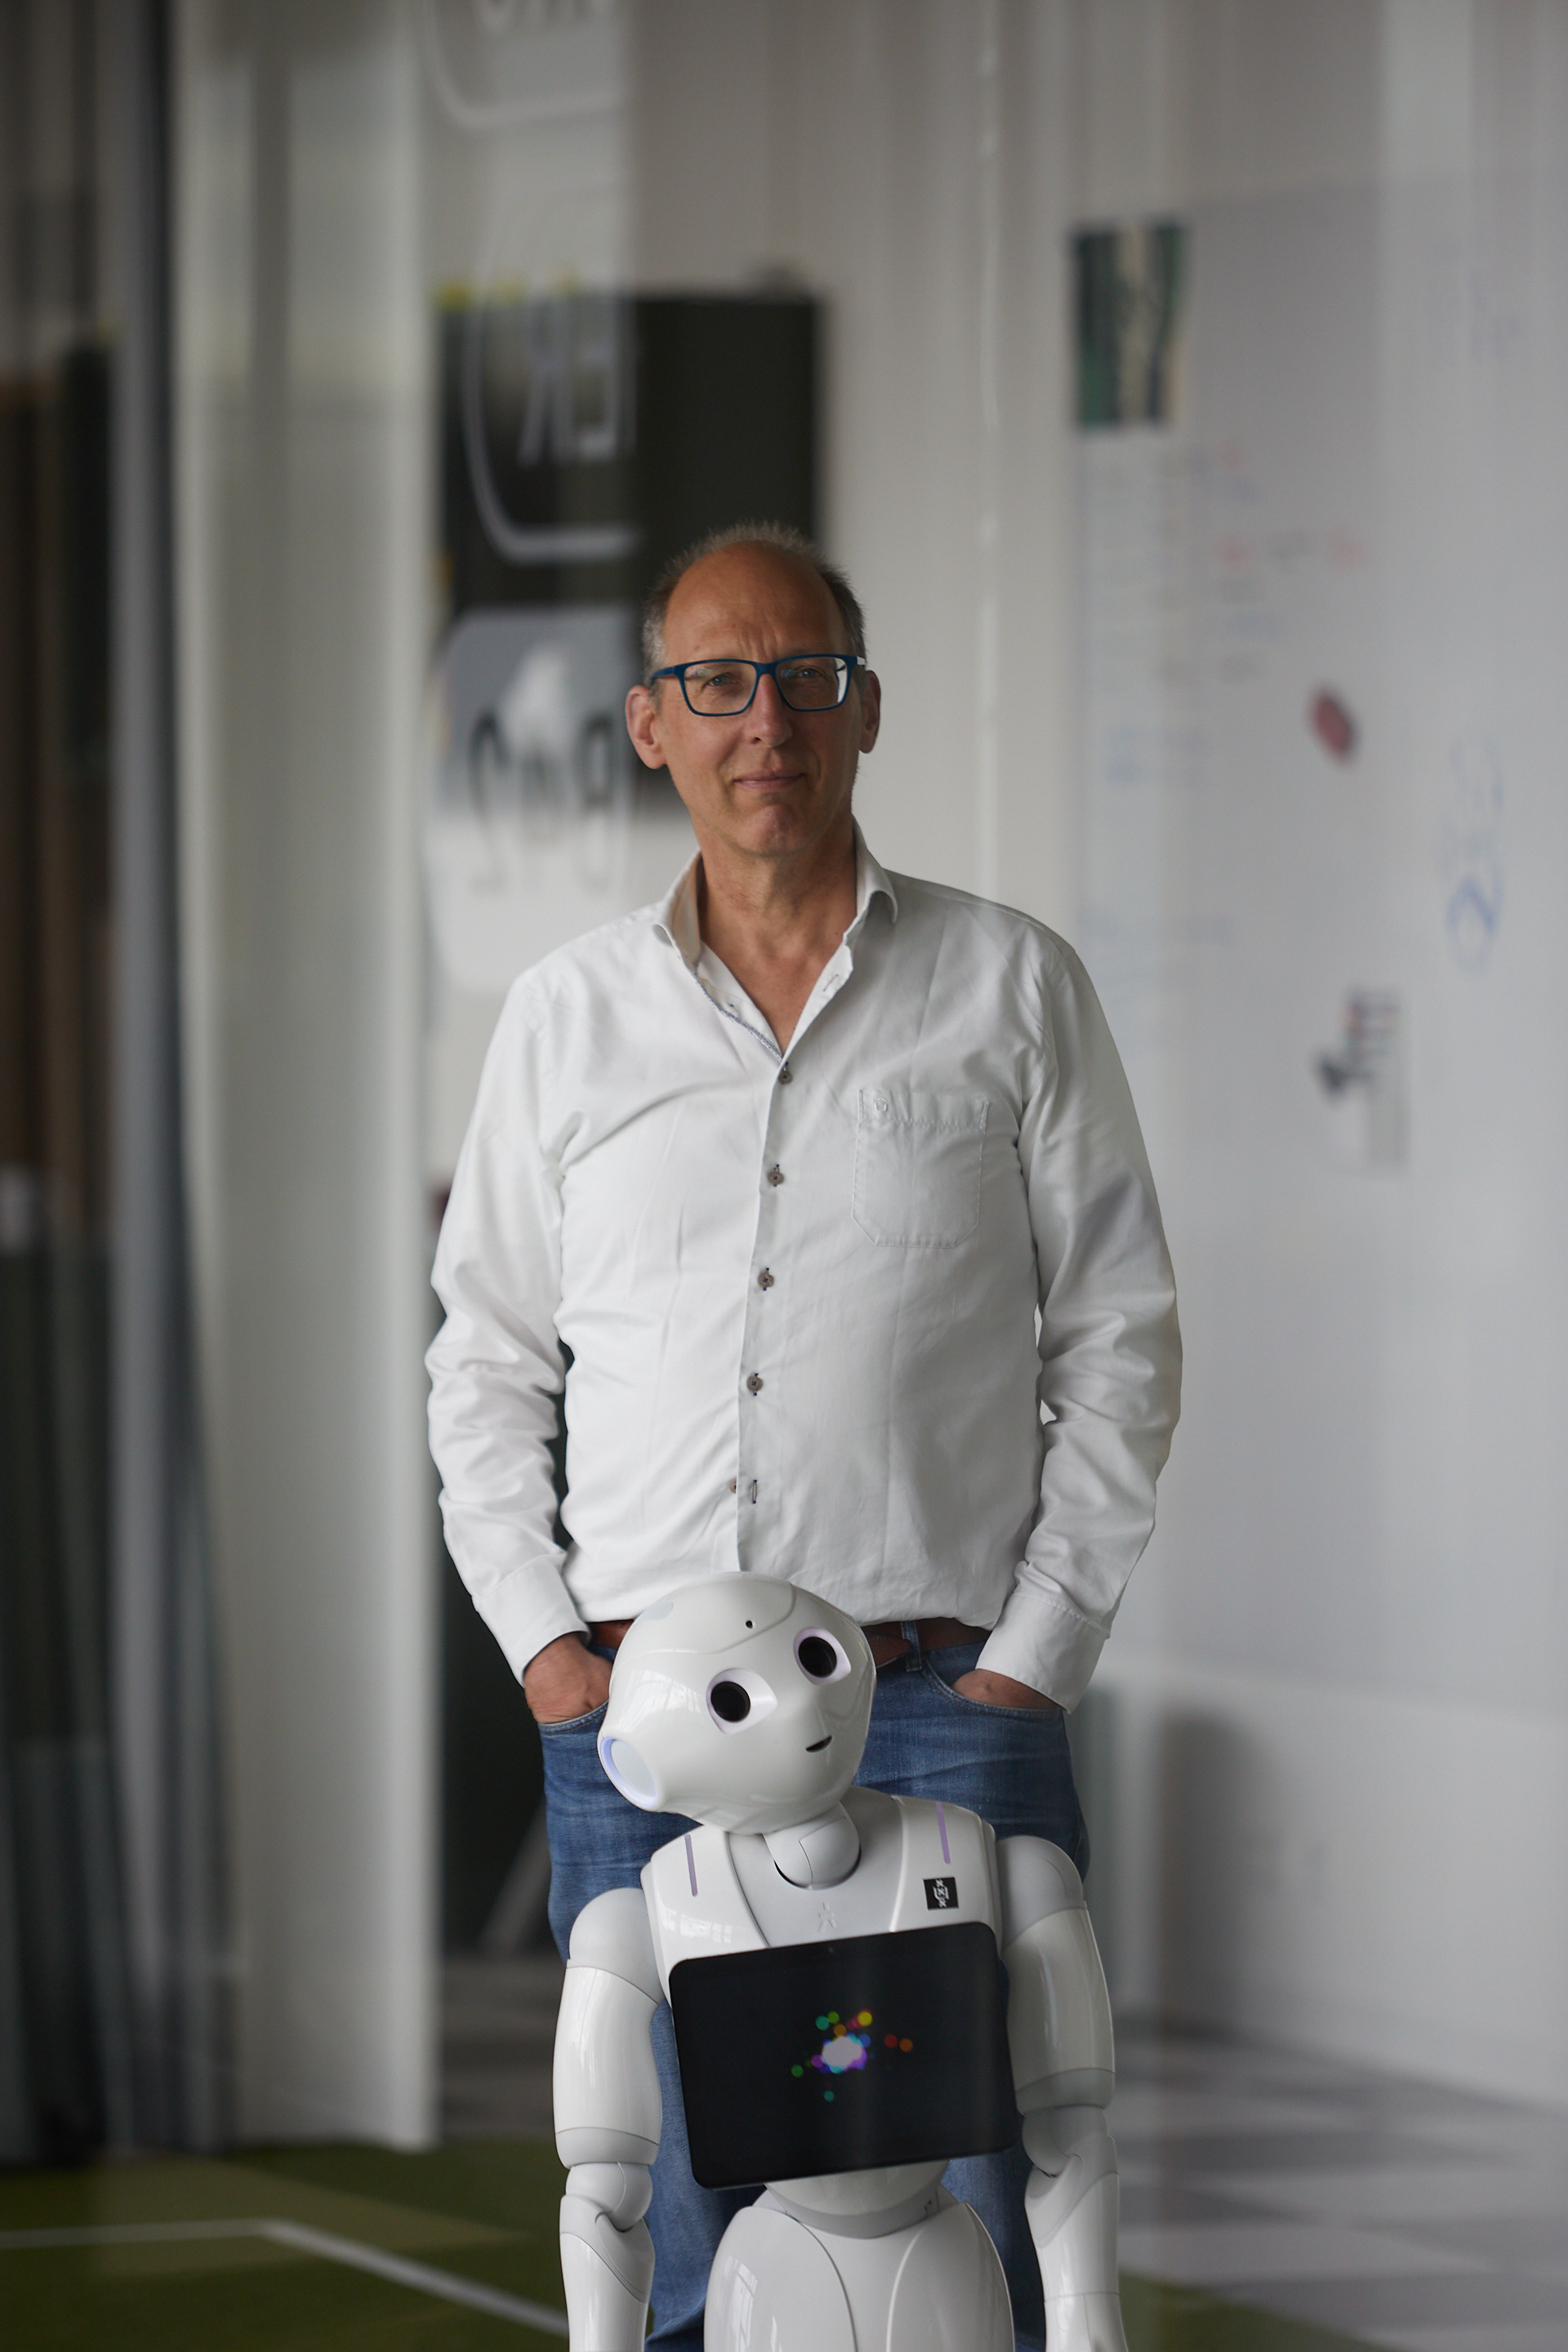 Arnoud Visser in the Intelligent Robotics Lab